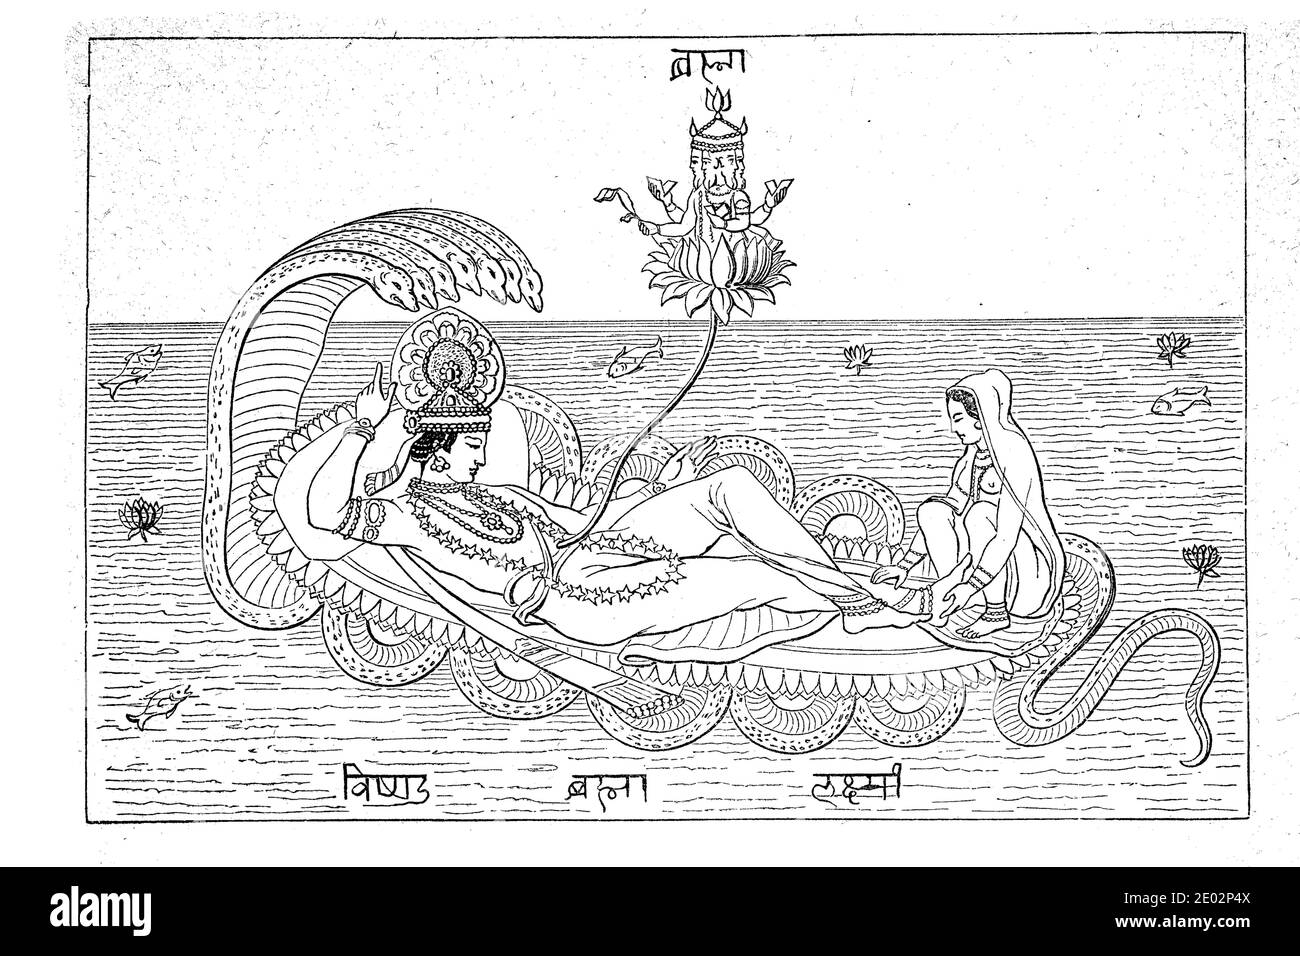 Indische Religion, Vishnu und Lakshmi auf der Schlange Anata, mit Brahma aus der Lotusblume / Indische Religion, Wischnu und Lakschmi auf der Schlange Anata, mit dem aus der Lotusblume hervorstehendem Brahma, Historisch, historisch, Digitale verbesserte Reproduktion eines Originals aus dem 19. Jahrhundert / digitale Reproduktion einer Originalvorlage aus dem 19. Jahrhundert Stockfoto